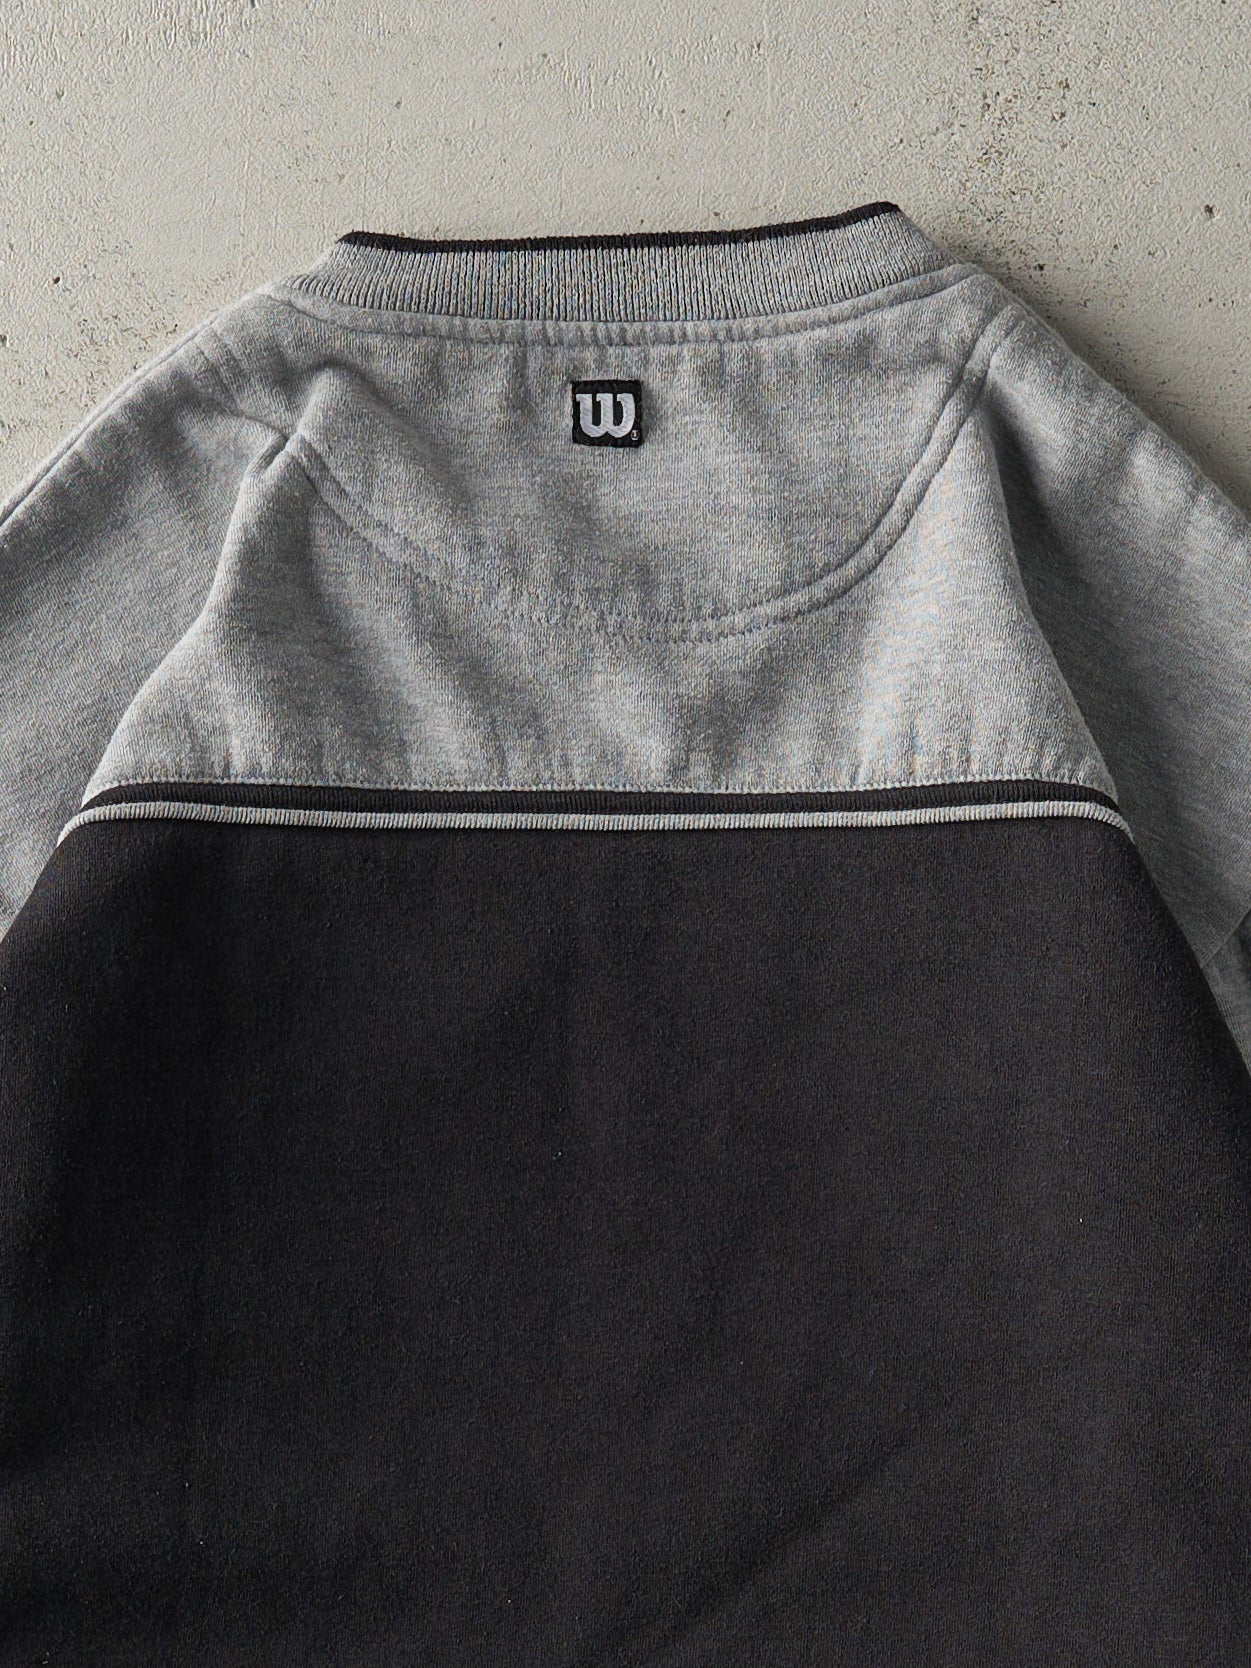 Vintage Y2K Grey & Black Embroidered Wilson V Neck Sweatshirt (M/L)